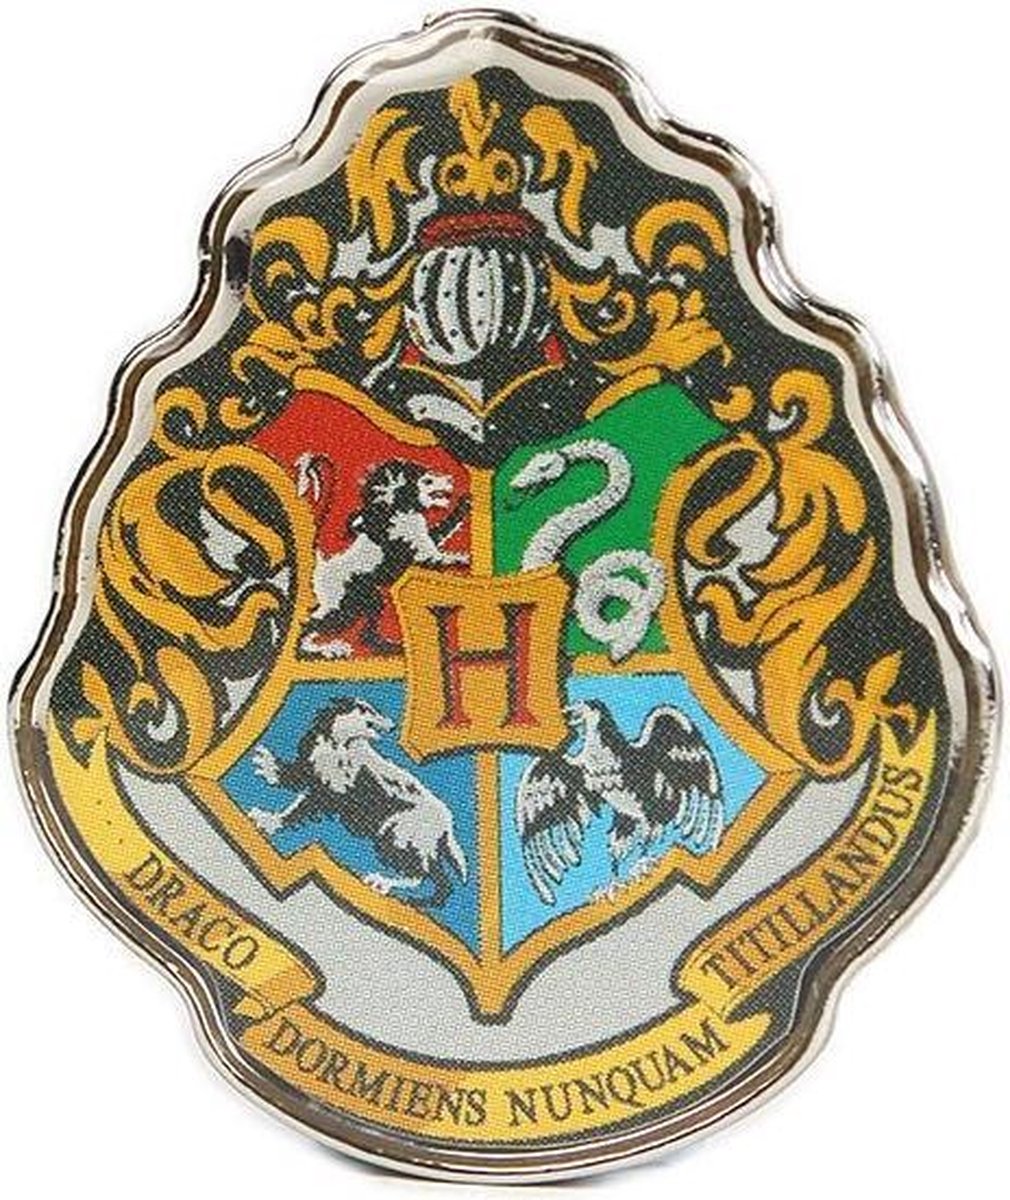 Harry Potter - Hogwarts Crest Enamel Pin Badge